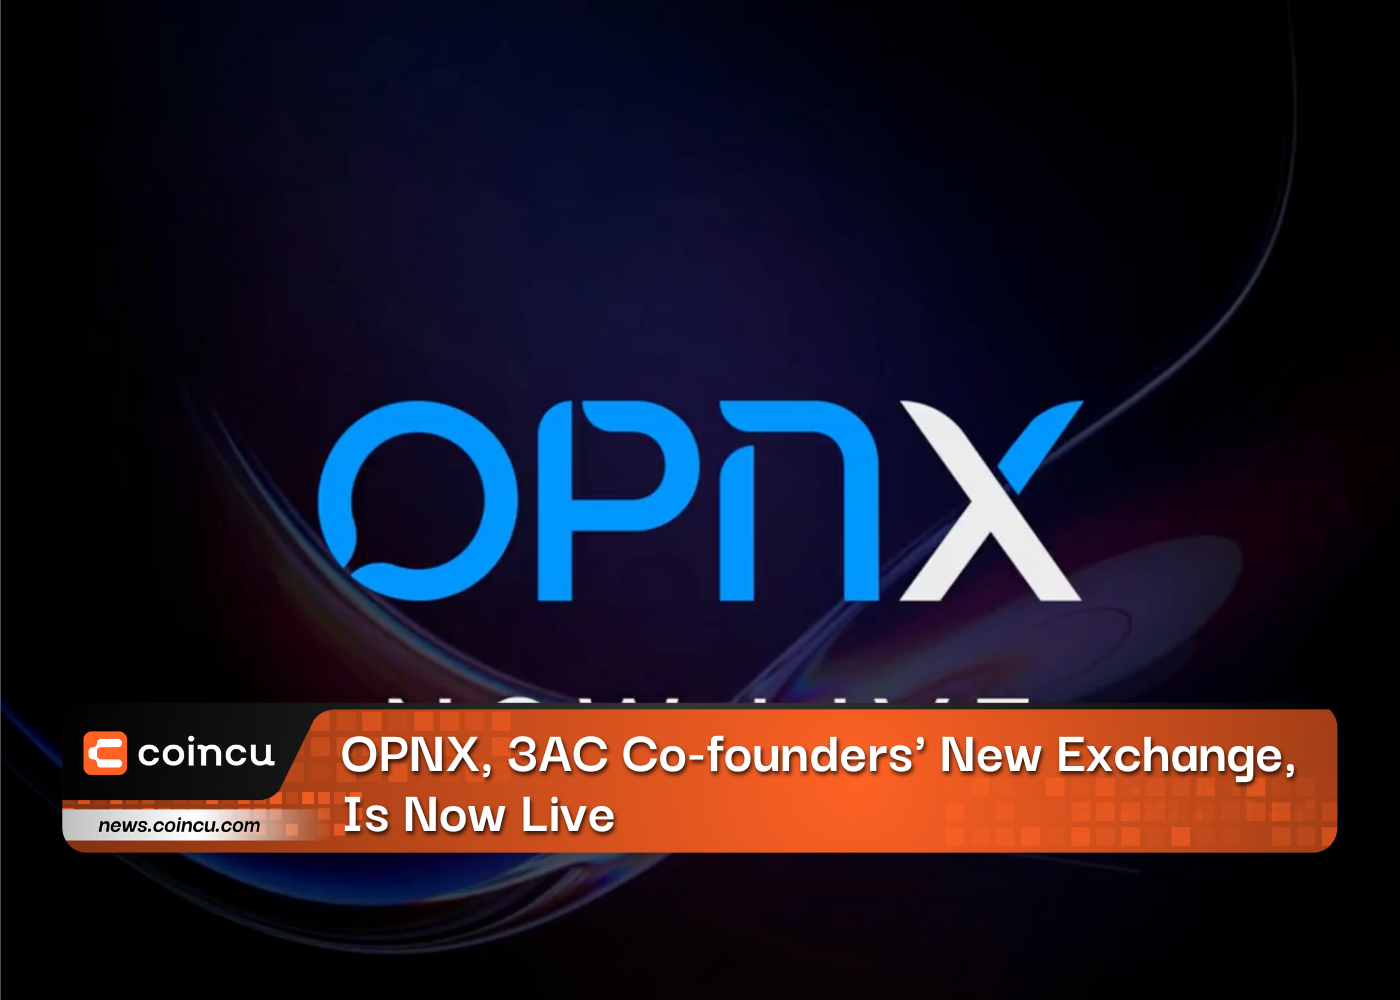 OPNX, nova bolsa dos cofundadores da 3AC, já está ativa